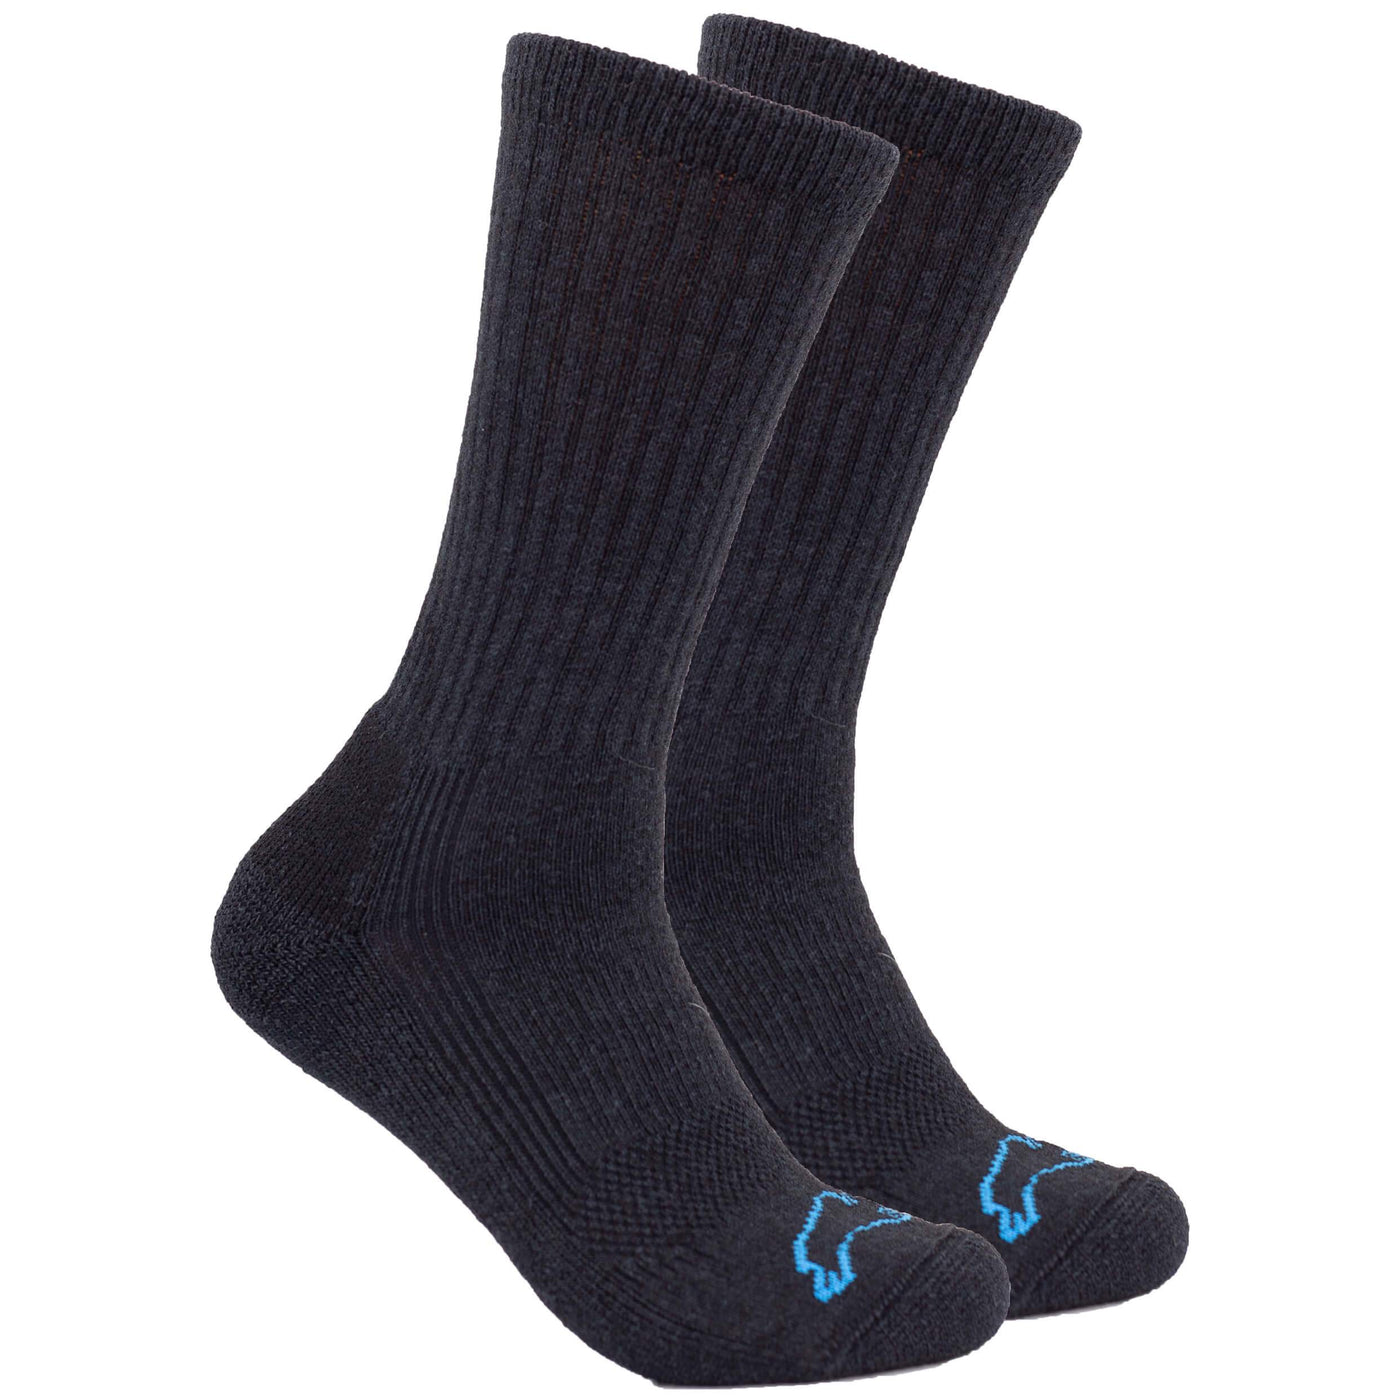 Pro Gear Crew Socks – The Buffalo Wool Co.